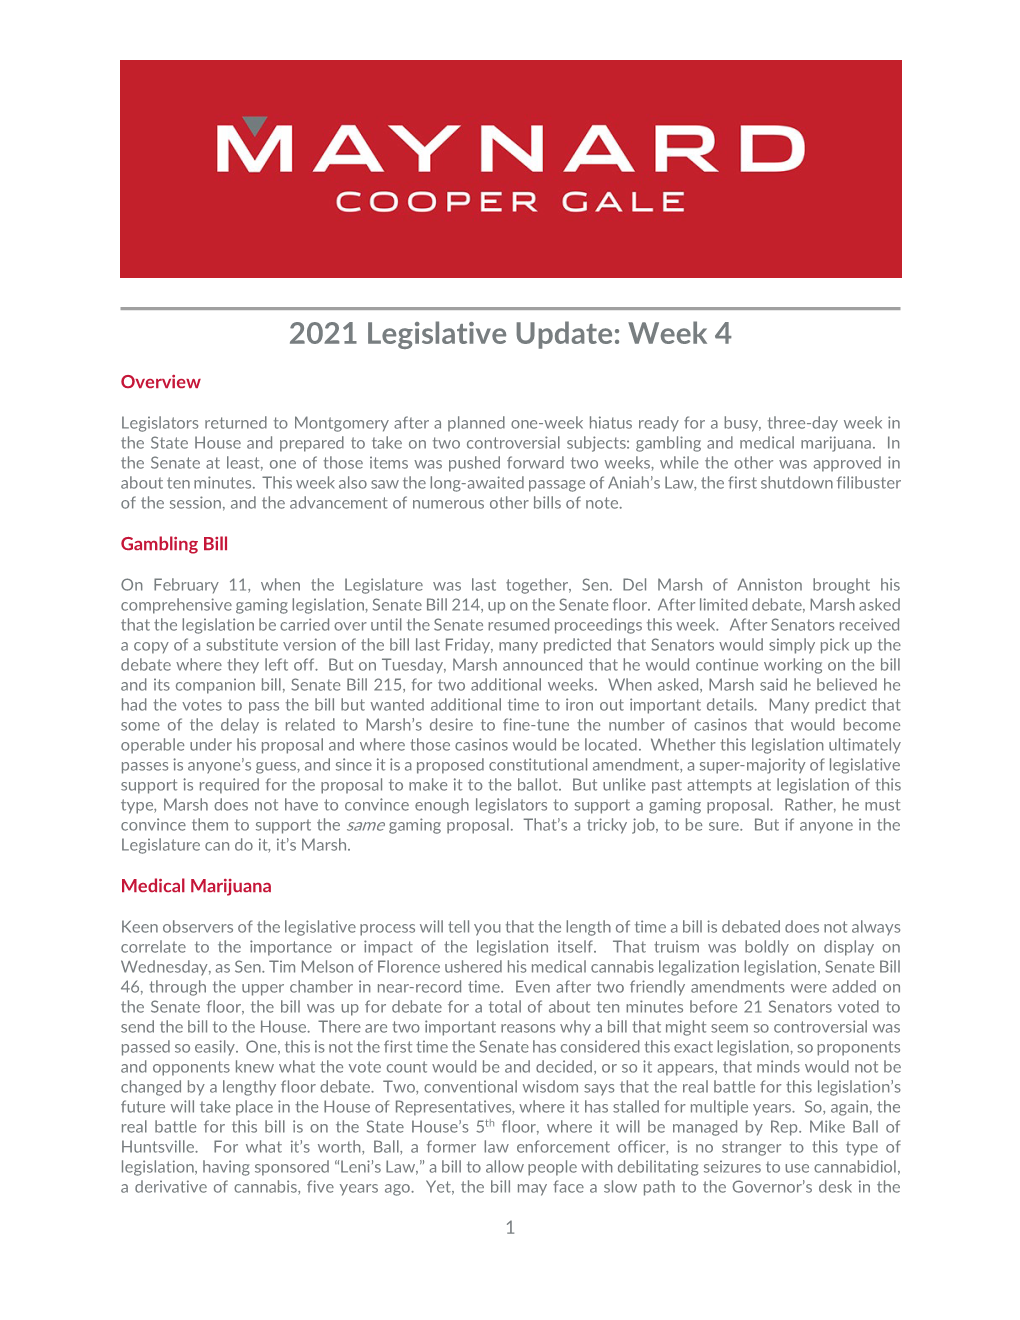 2021 Legislative Update Week 4